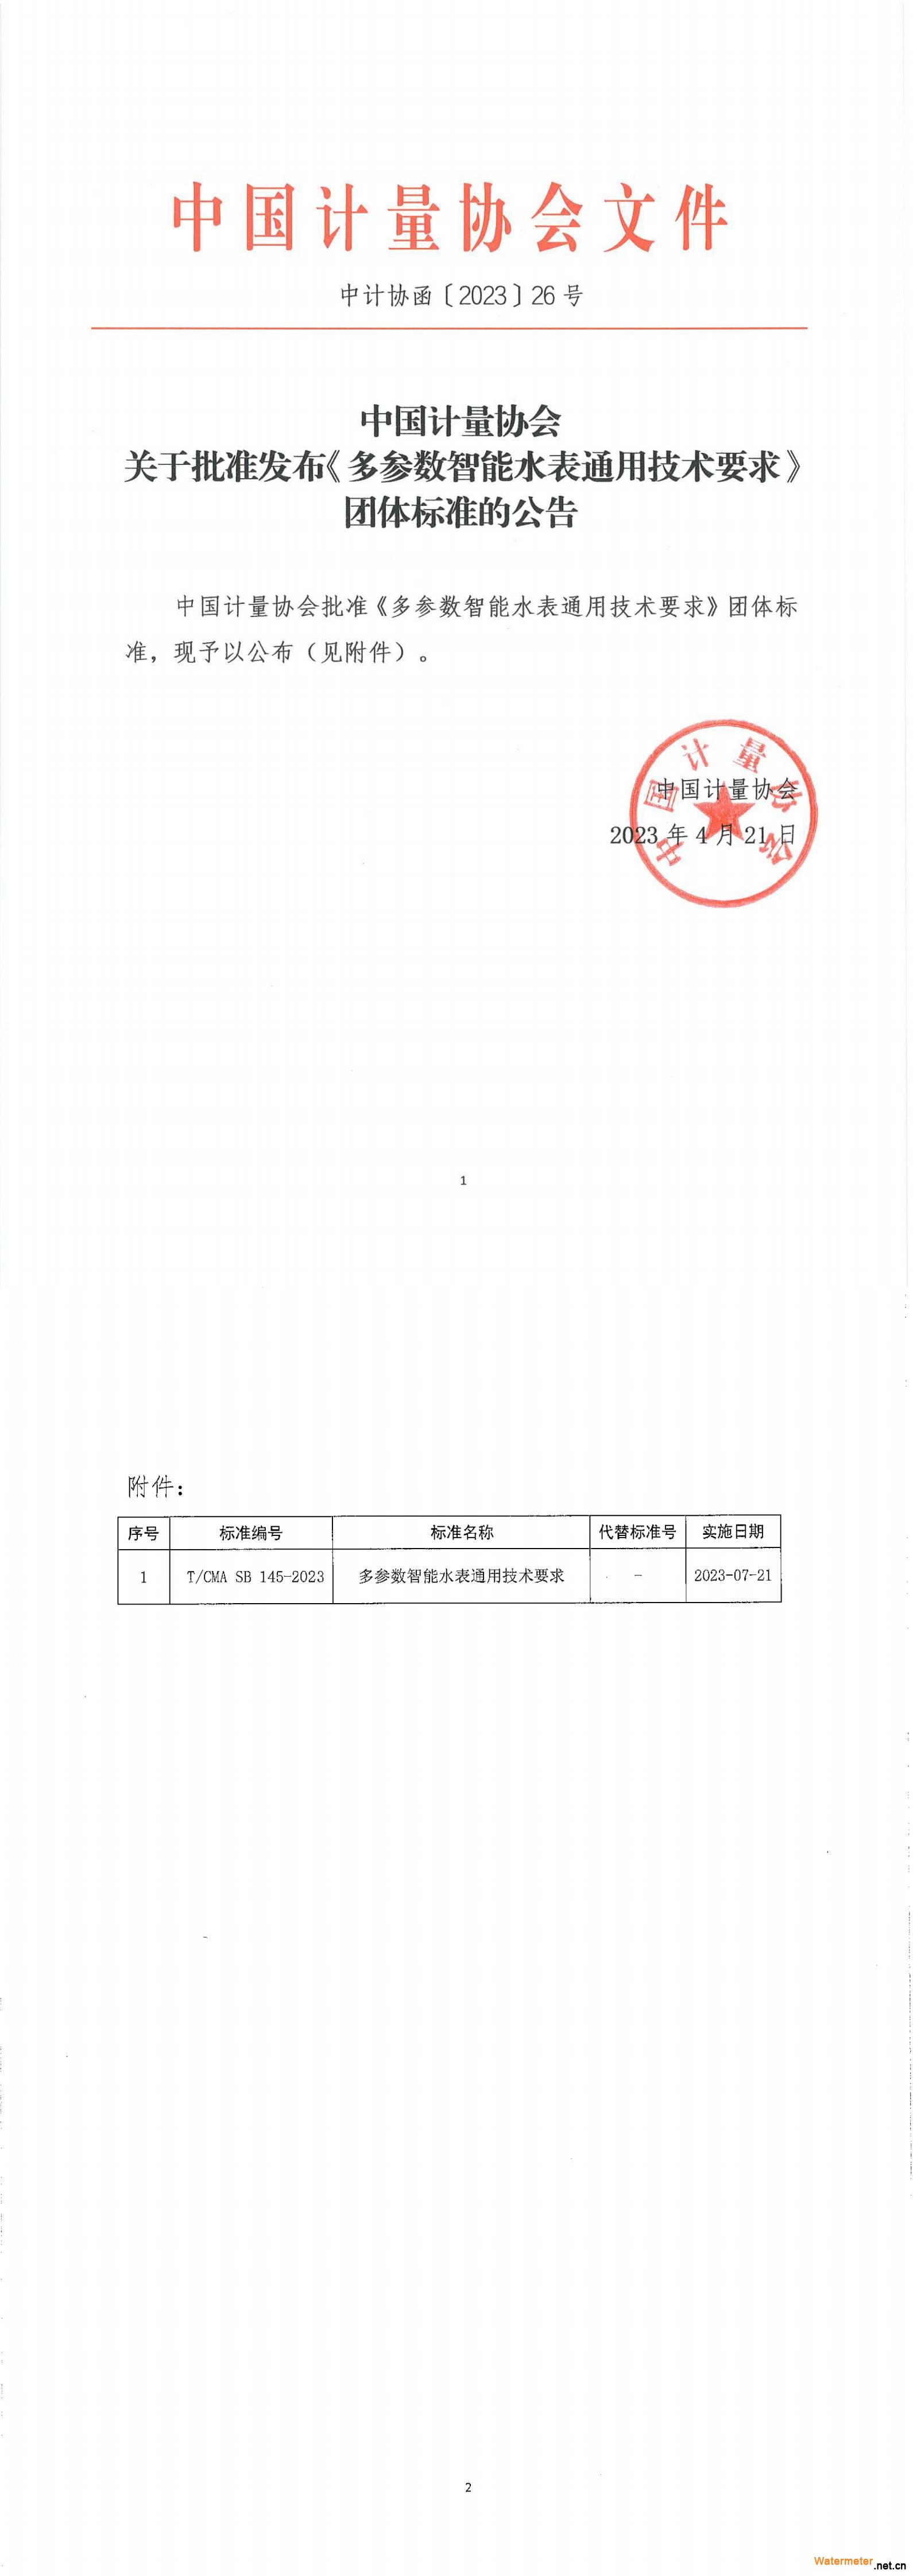 中国计量协会关于批准发布《多参数智能水表通用技术要求》团体标准的公告_中计协函〔2023〕26号_00(1)